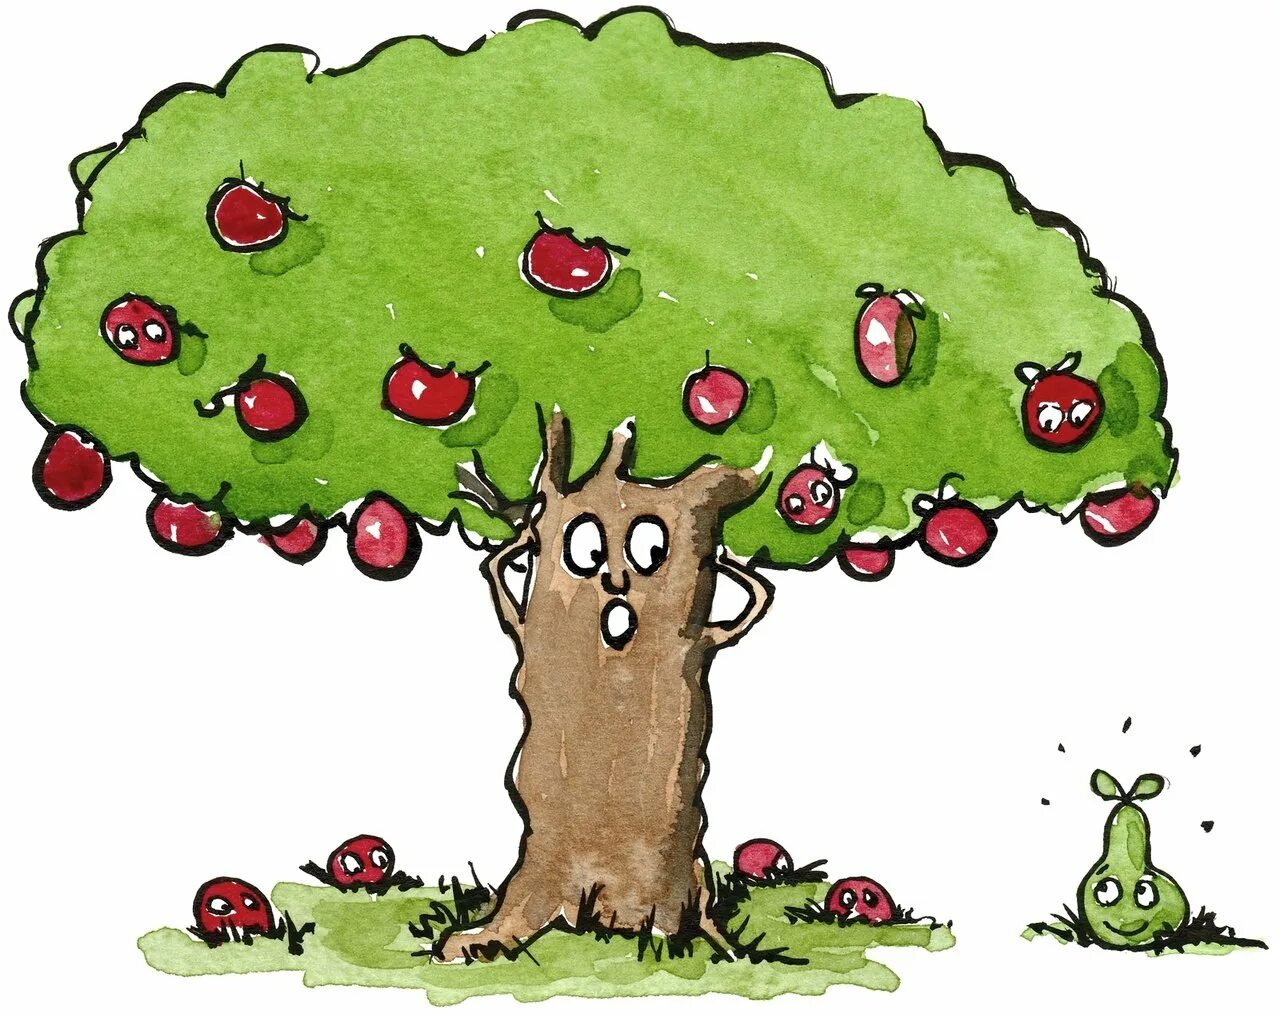 Пословицы яблоко от яблони недалеко. Яблоко от яблони. Яблоня рисунок. Яблоко от яблони недалеко падает. Яблоки на дереве.